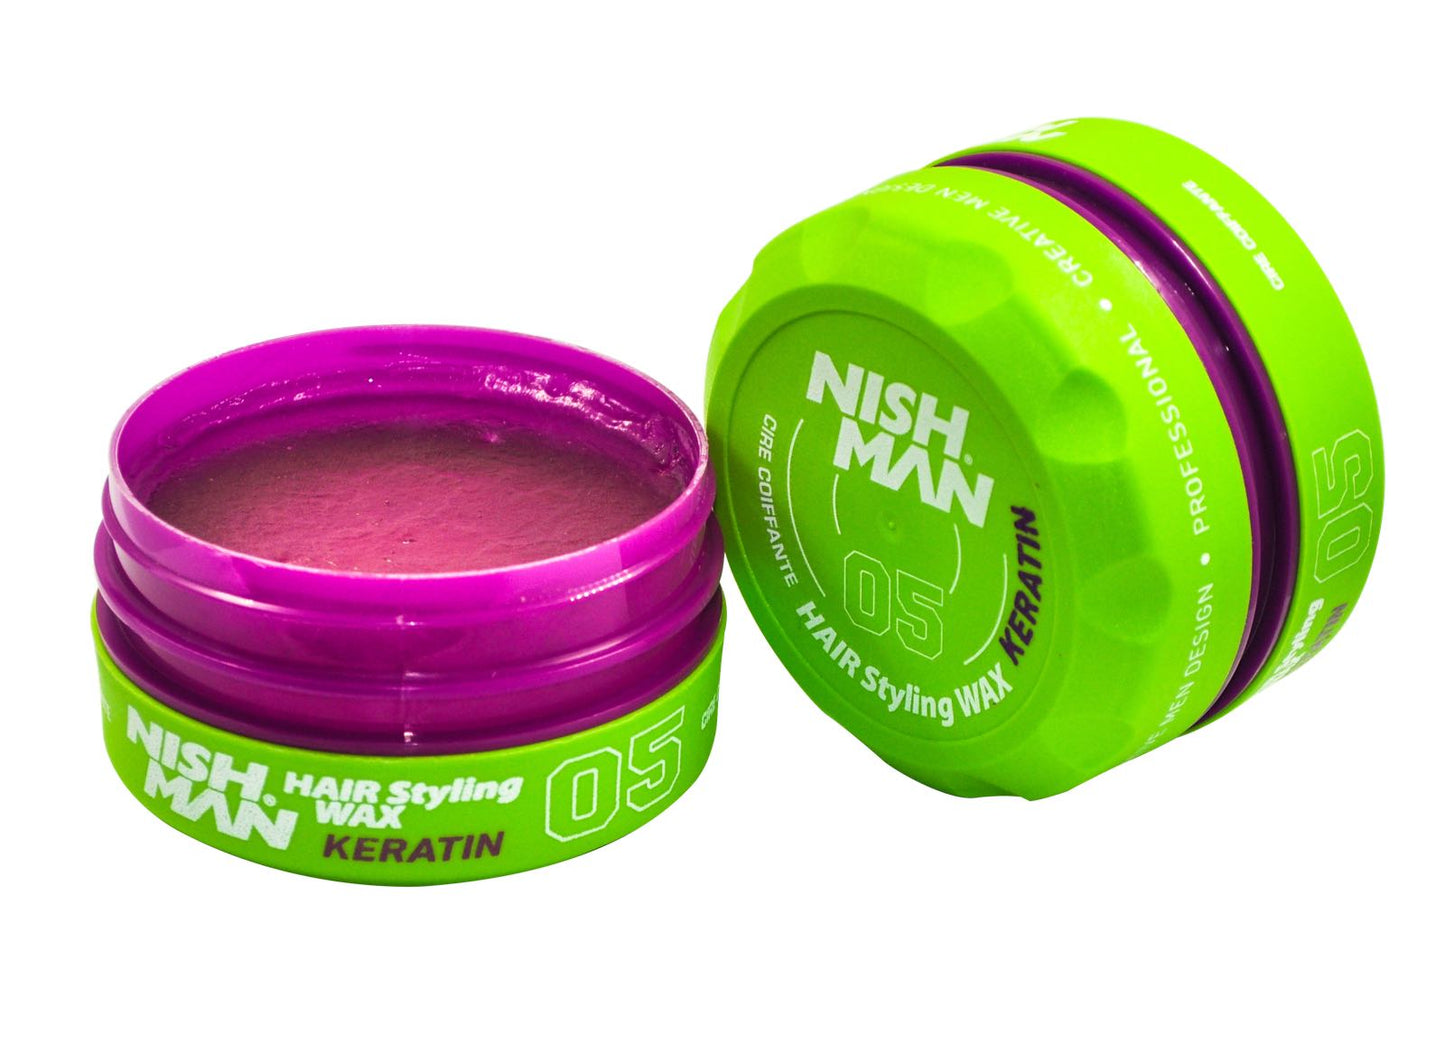 Nishman Hair Styling Keratin Green Wax 05